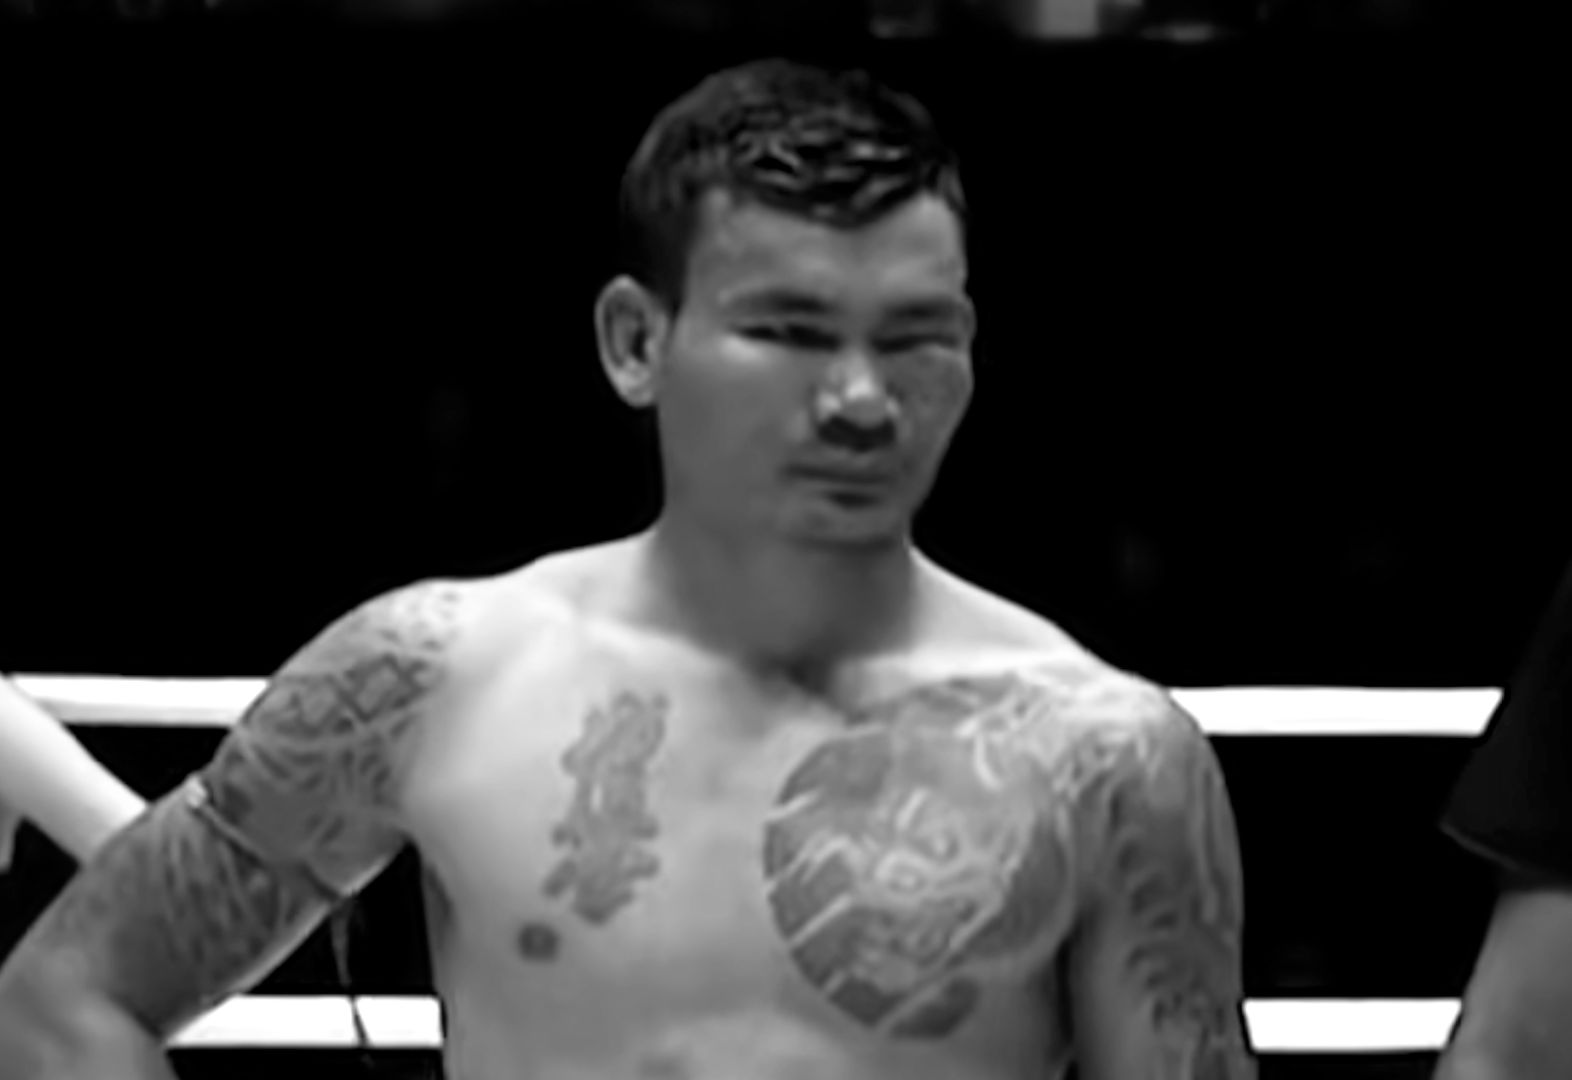 Był mistrzem w boksie birmańskim. Został stracony przez armię